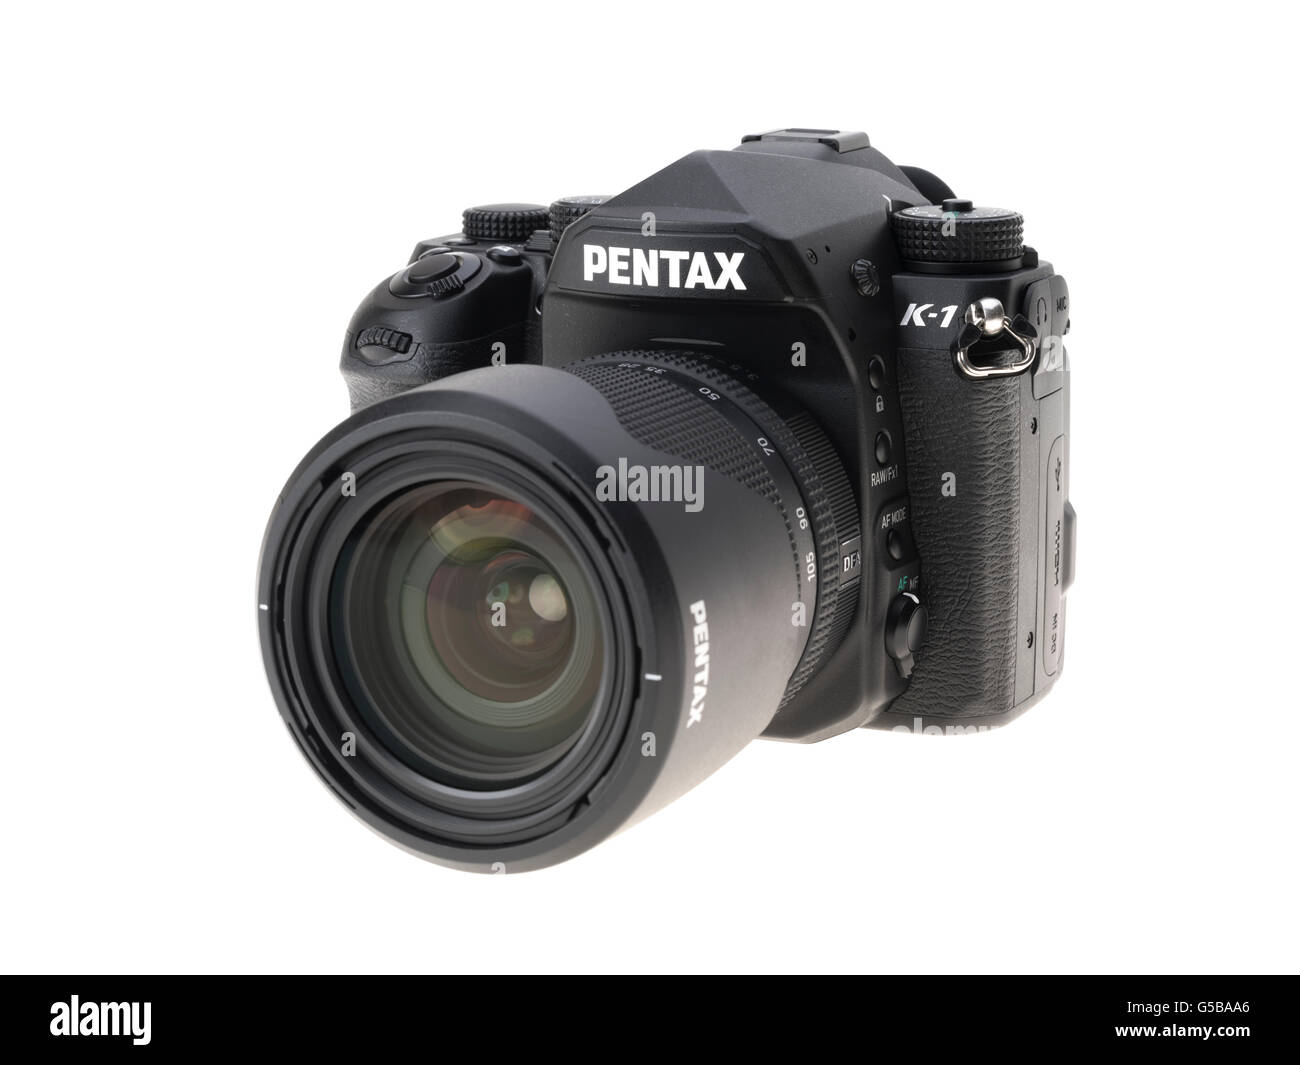 Pentax K-1 DSLR full frame digital single lens reflex camera released 2016 Stock Photo